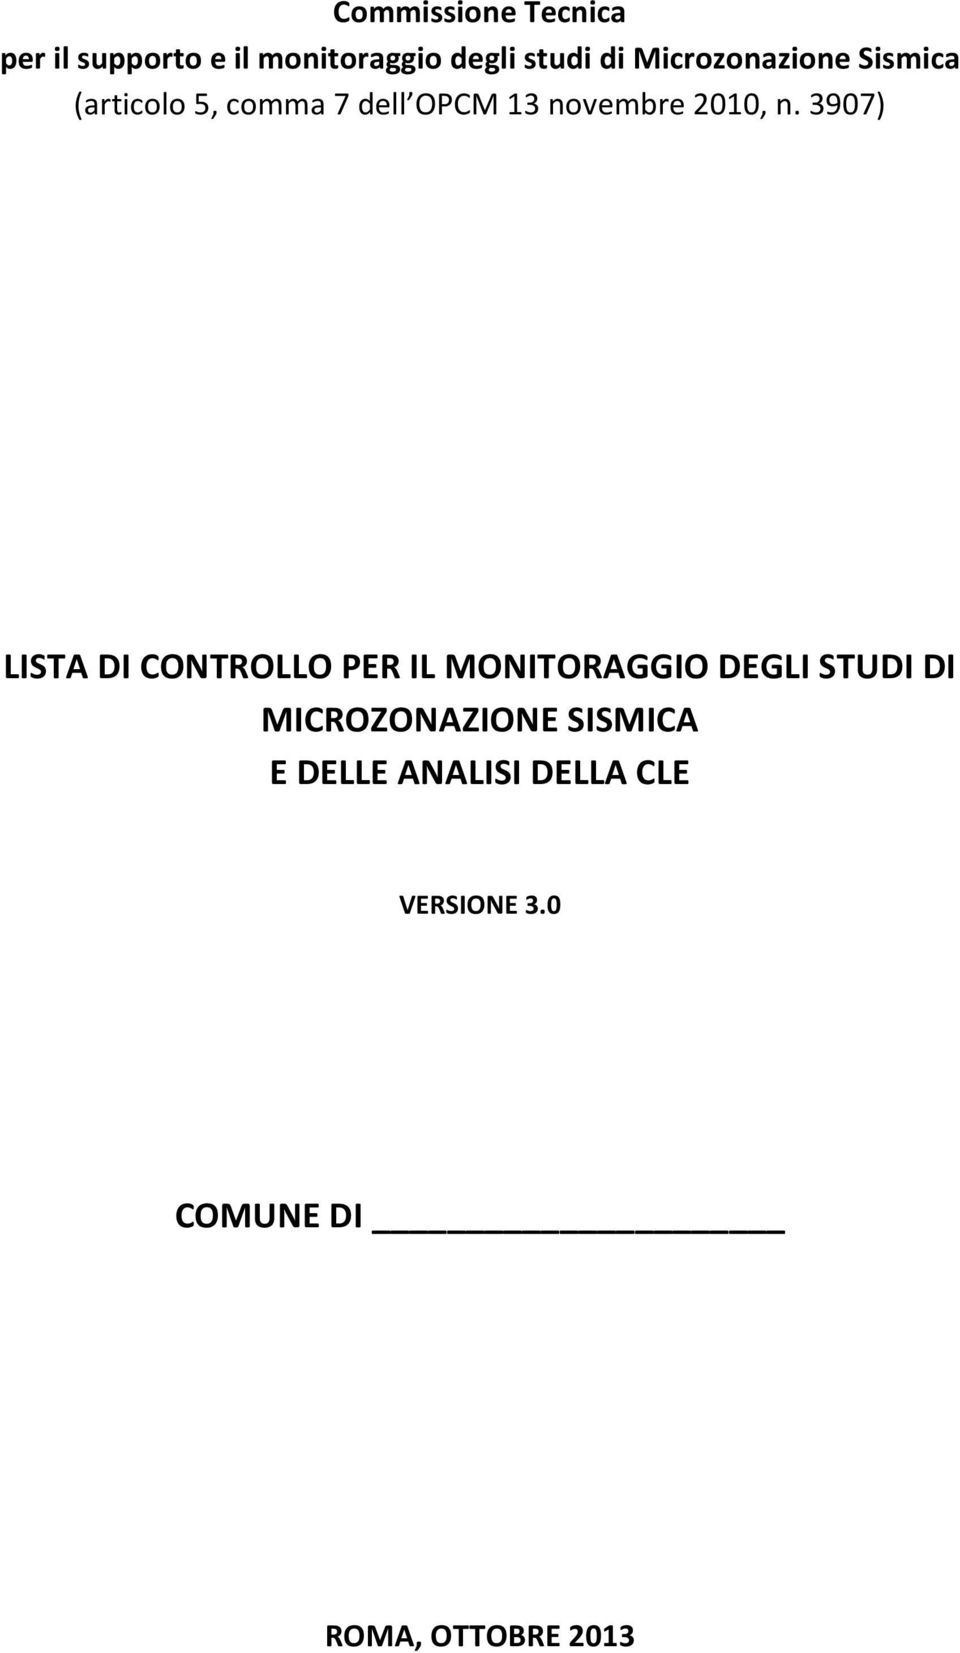 3907) LISTA DI CONTROLLO PER IL MONITORAGGIO DEGLI STUDI DI